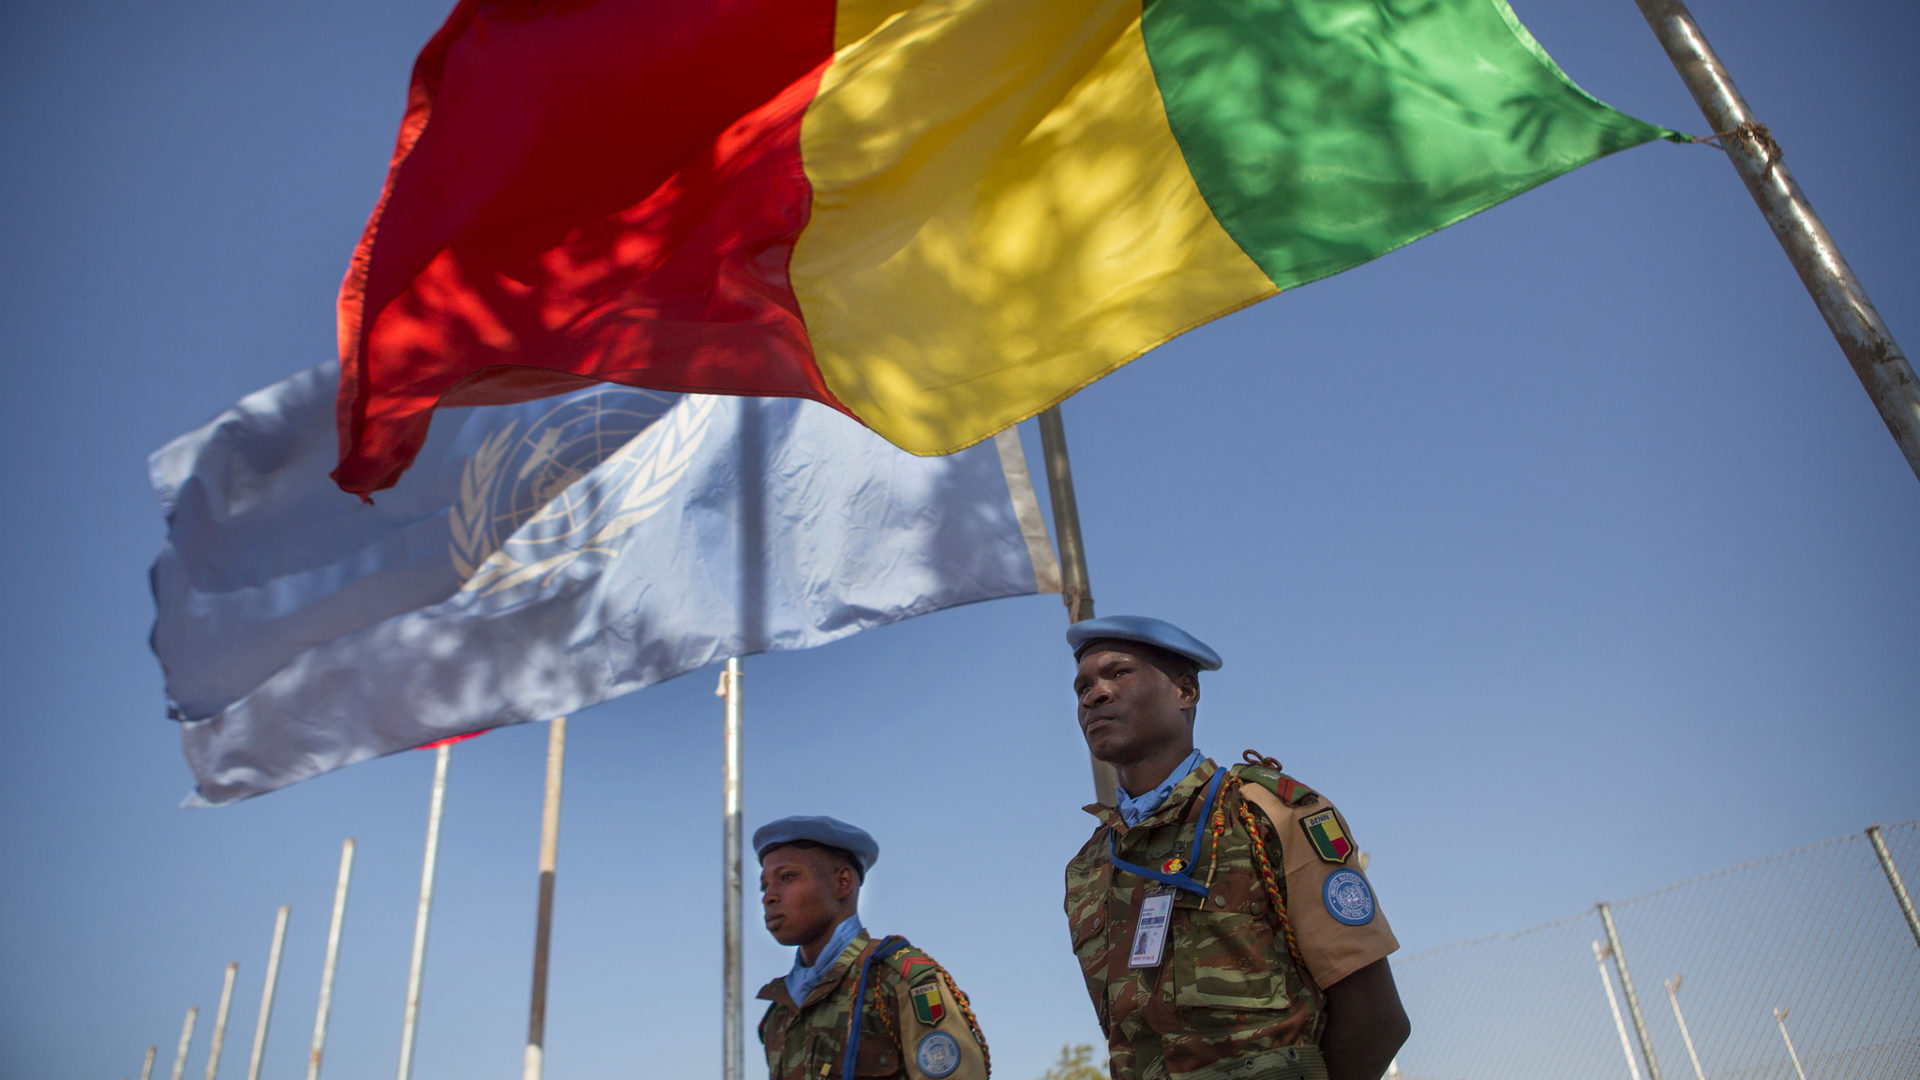 Le Mali est en proie à des violences islamistes, depuis mars 2012 | © Flickr/un_photo/CC BY-NC-ND 2.0